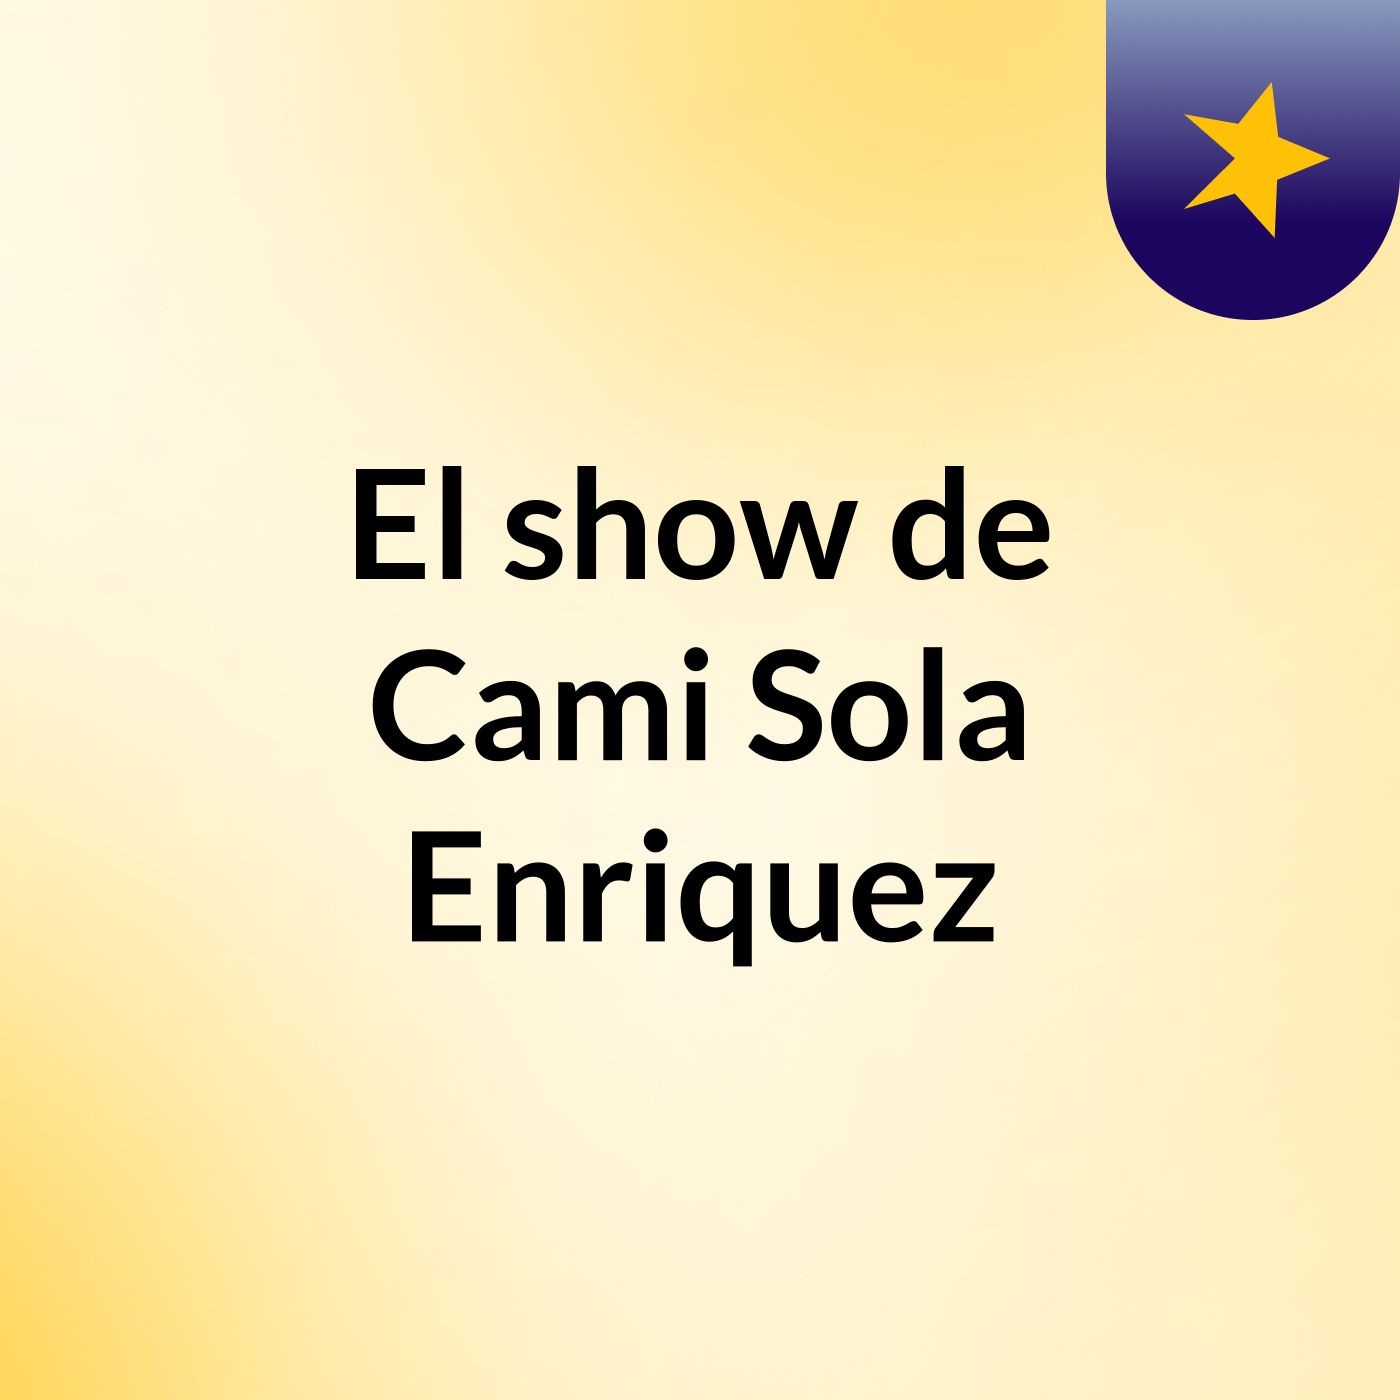 El show de Cami Sola Enriquez